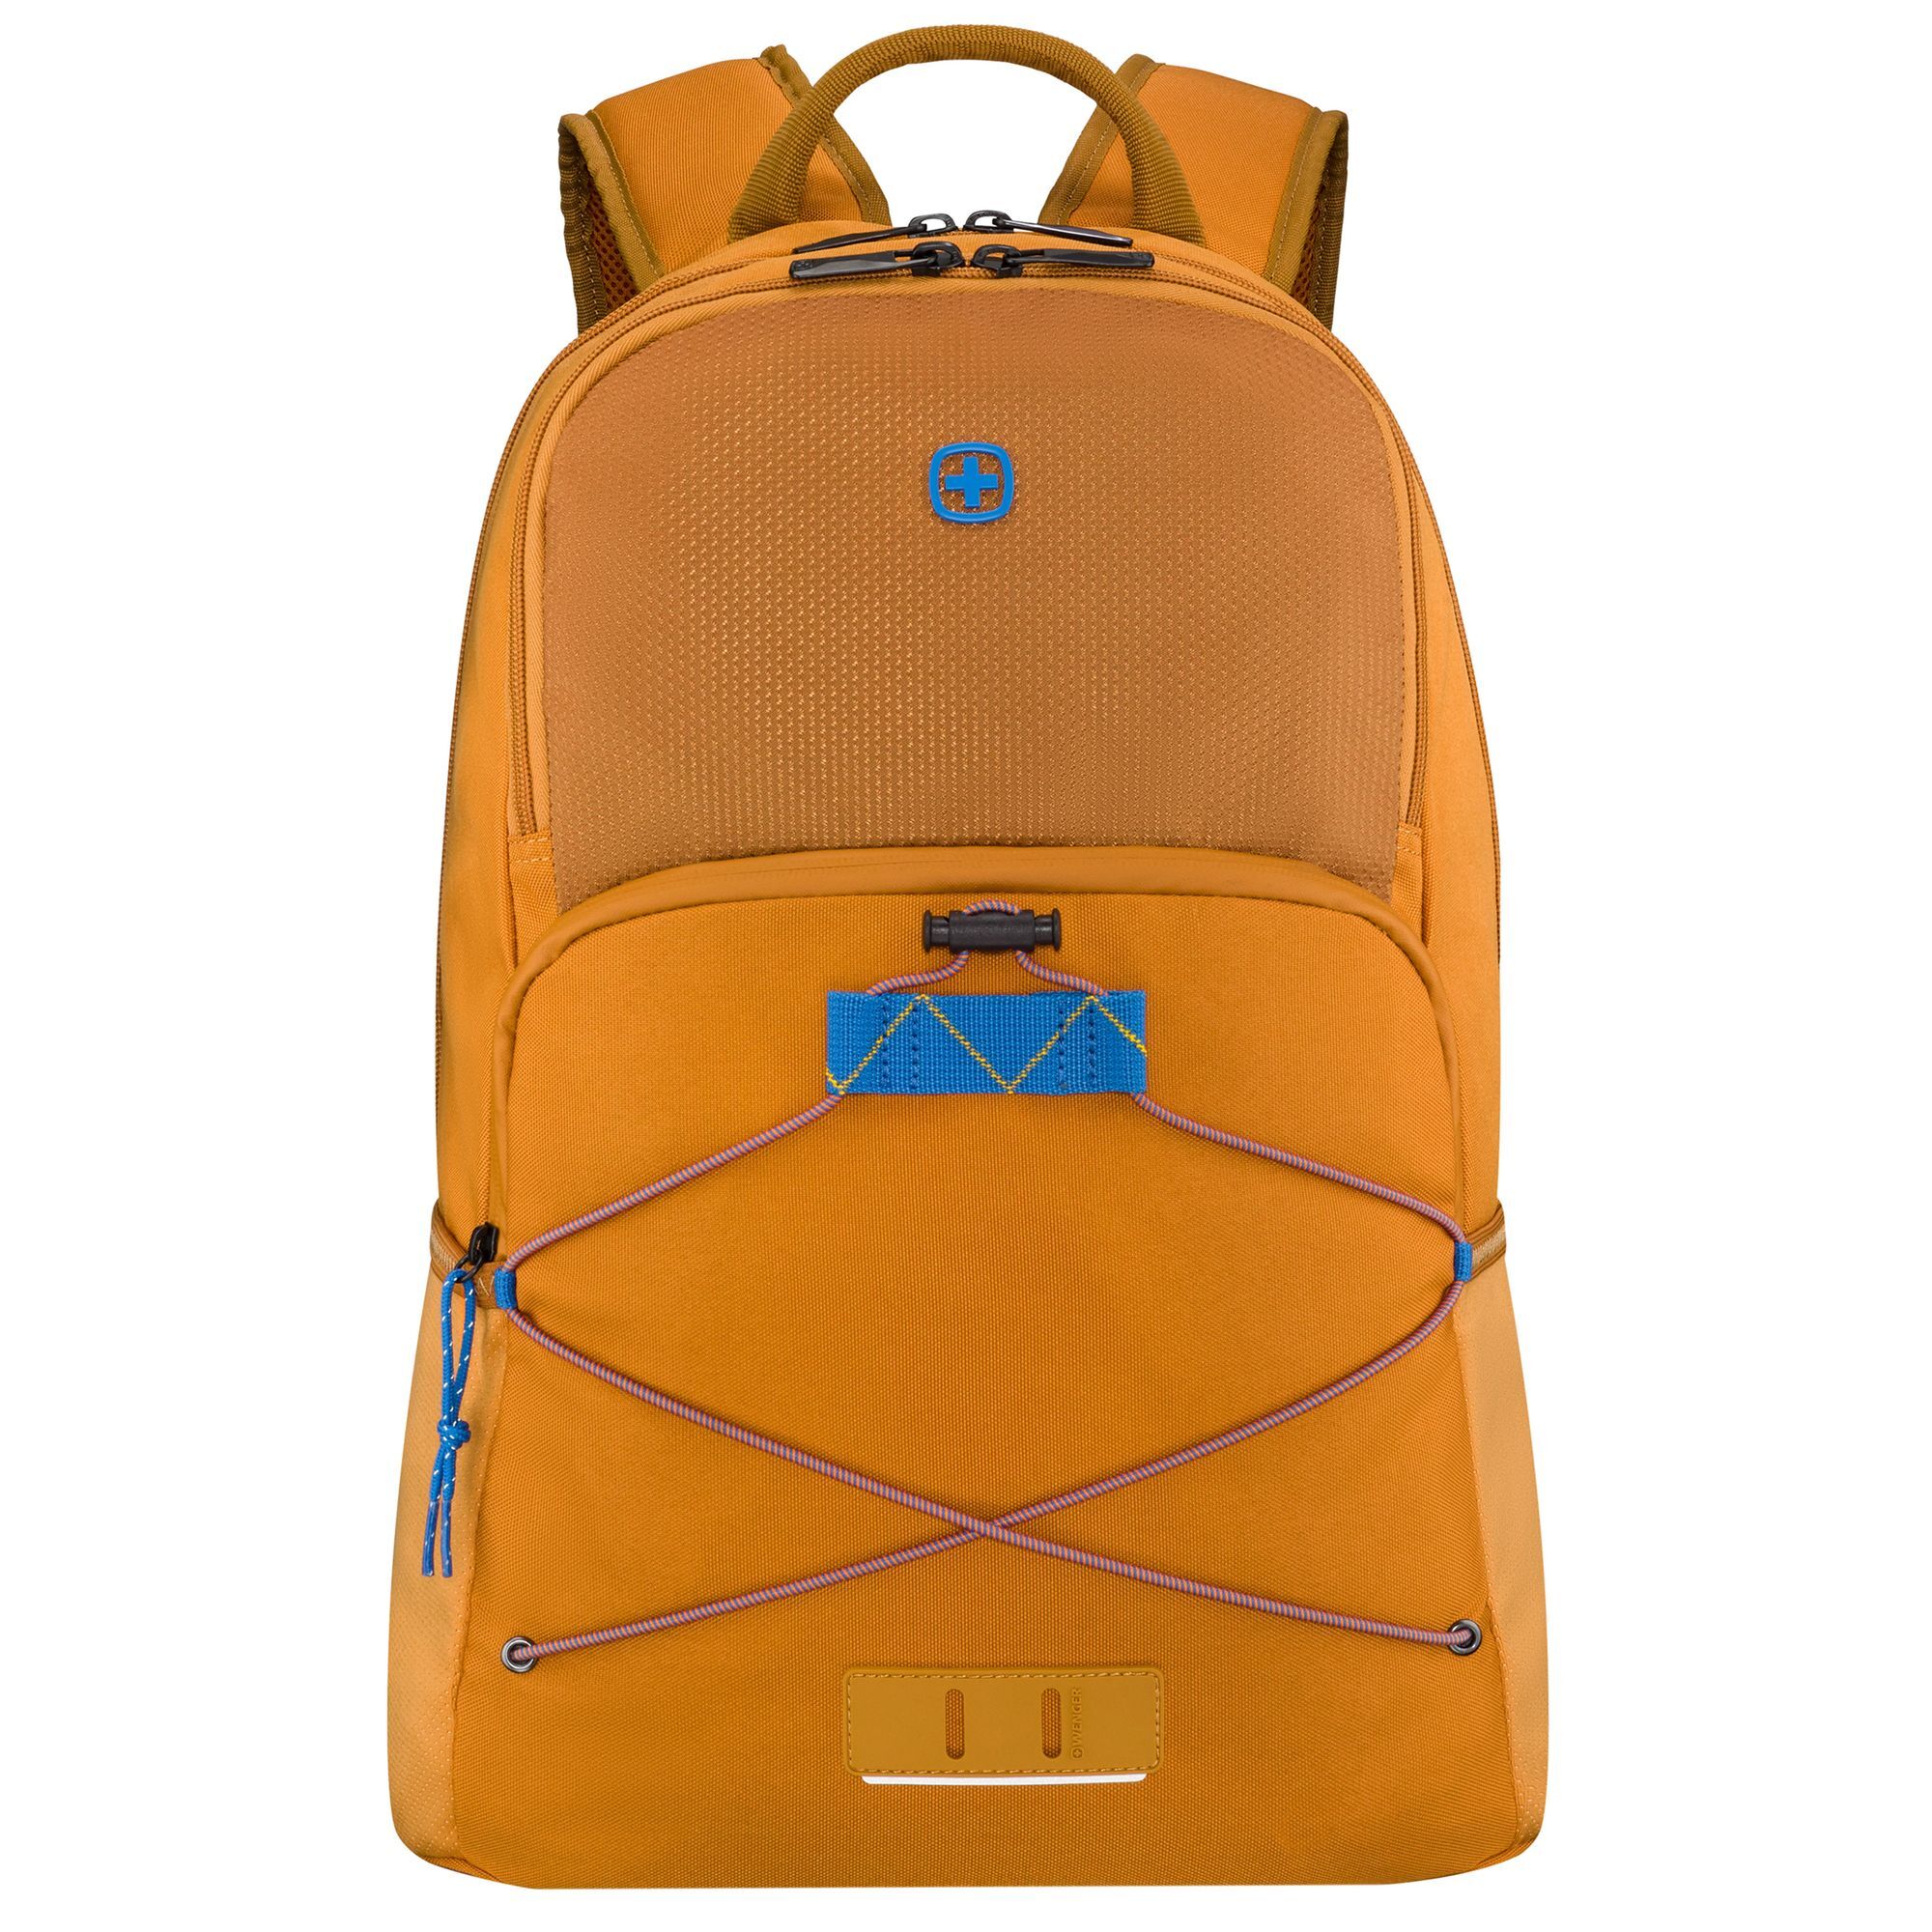 Рюкзак Wenger Trayl 45 cm Laptopfach, цвет ginger рюкзак wenger reload 14 42 cm laptopfach черный